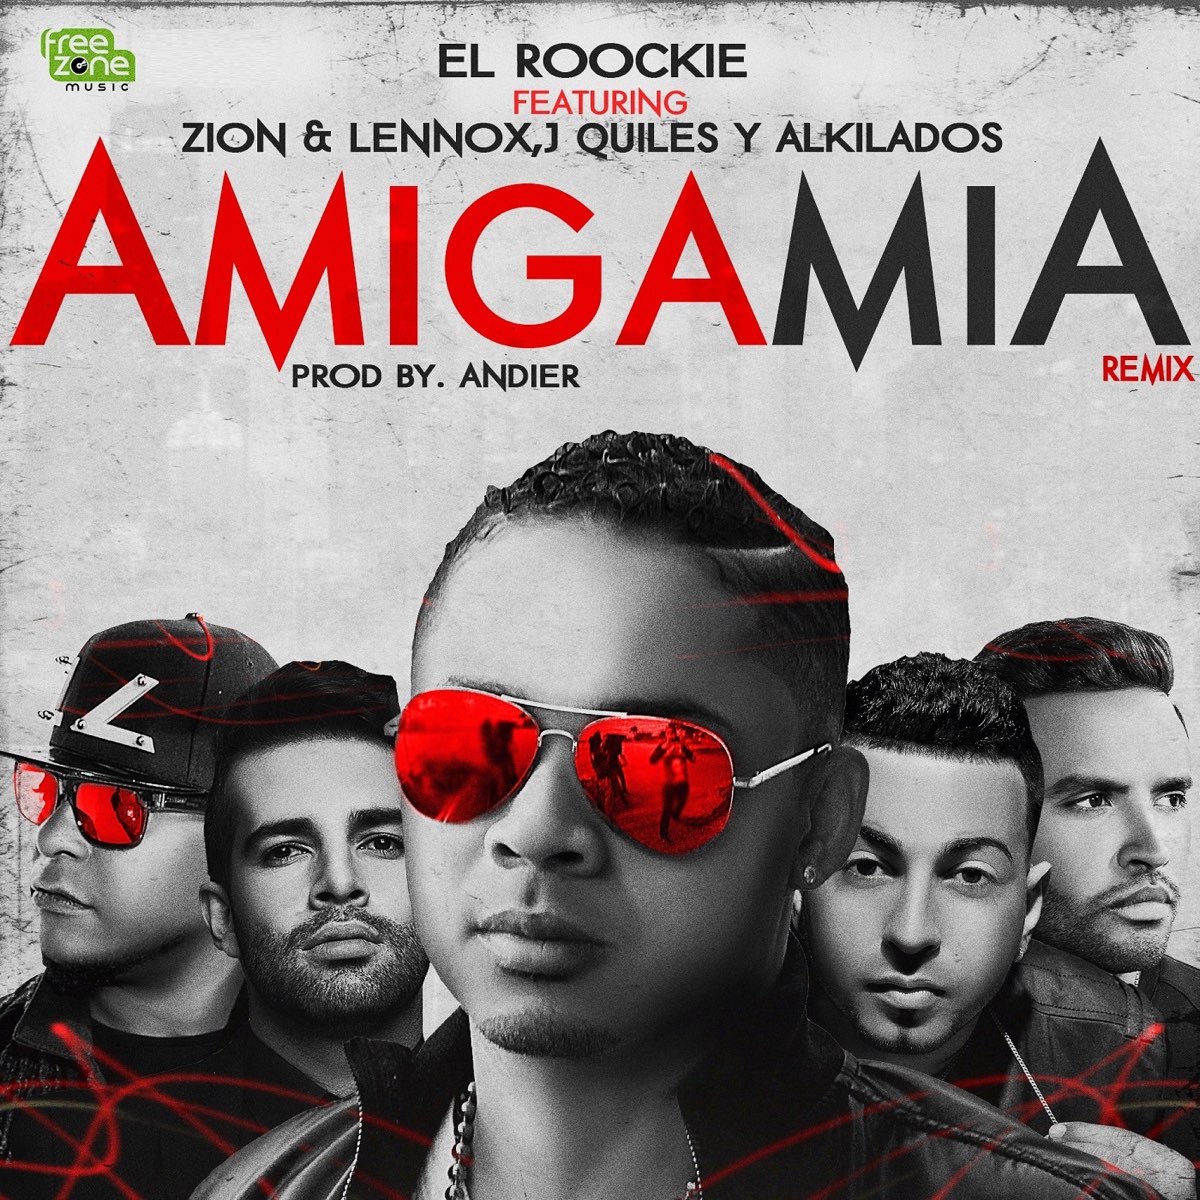 Amiga Mía (Remix) [feat. Zion & Lennox, Justin Quiles & Alkilados] - Single  de El Roockie en Apple Music